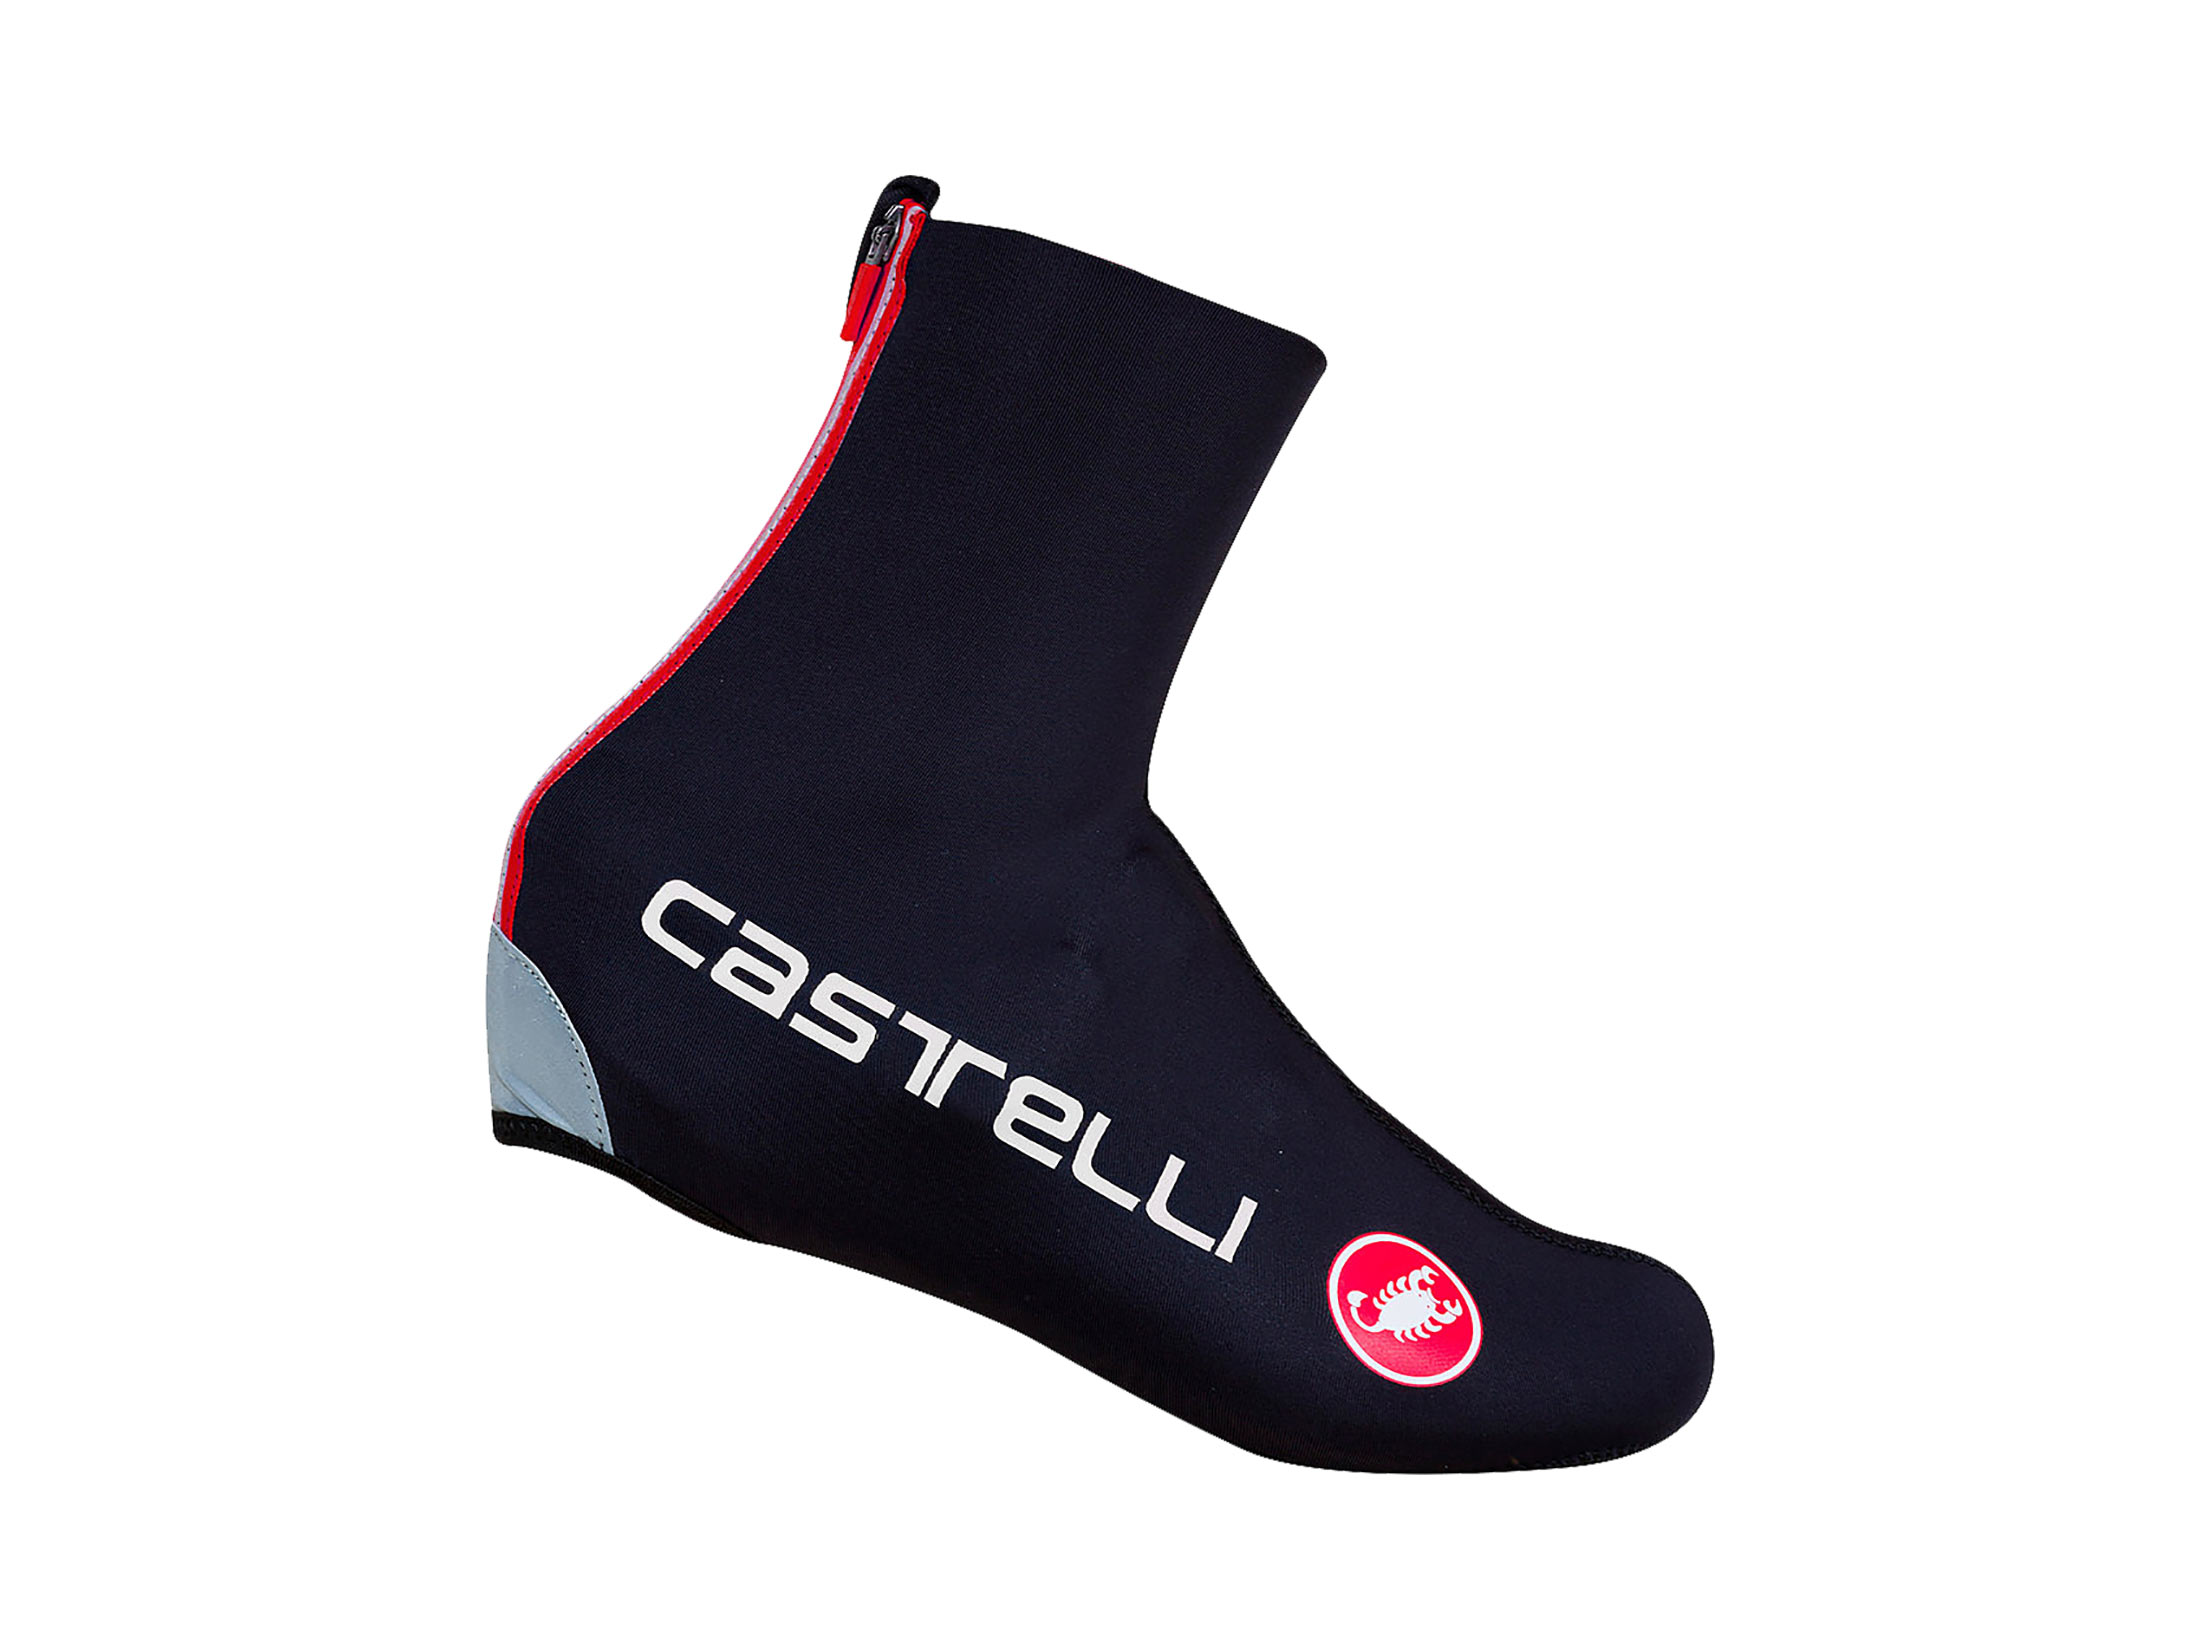 Καλύμματα Παπουτσιών Castelli Diluvio C 16 - Μαύρα